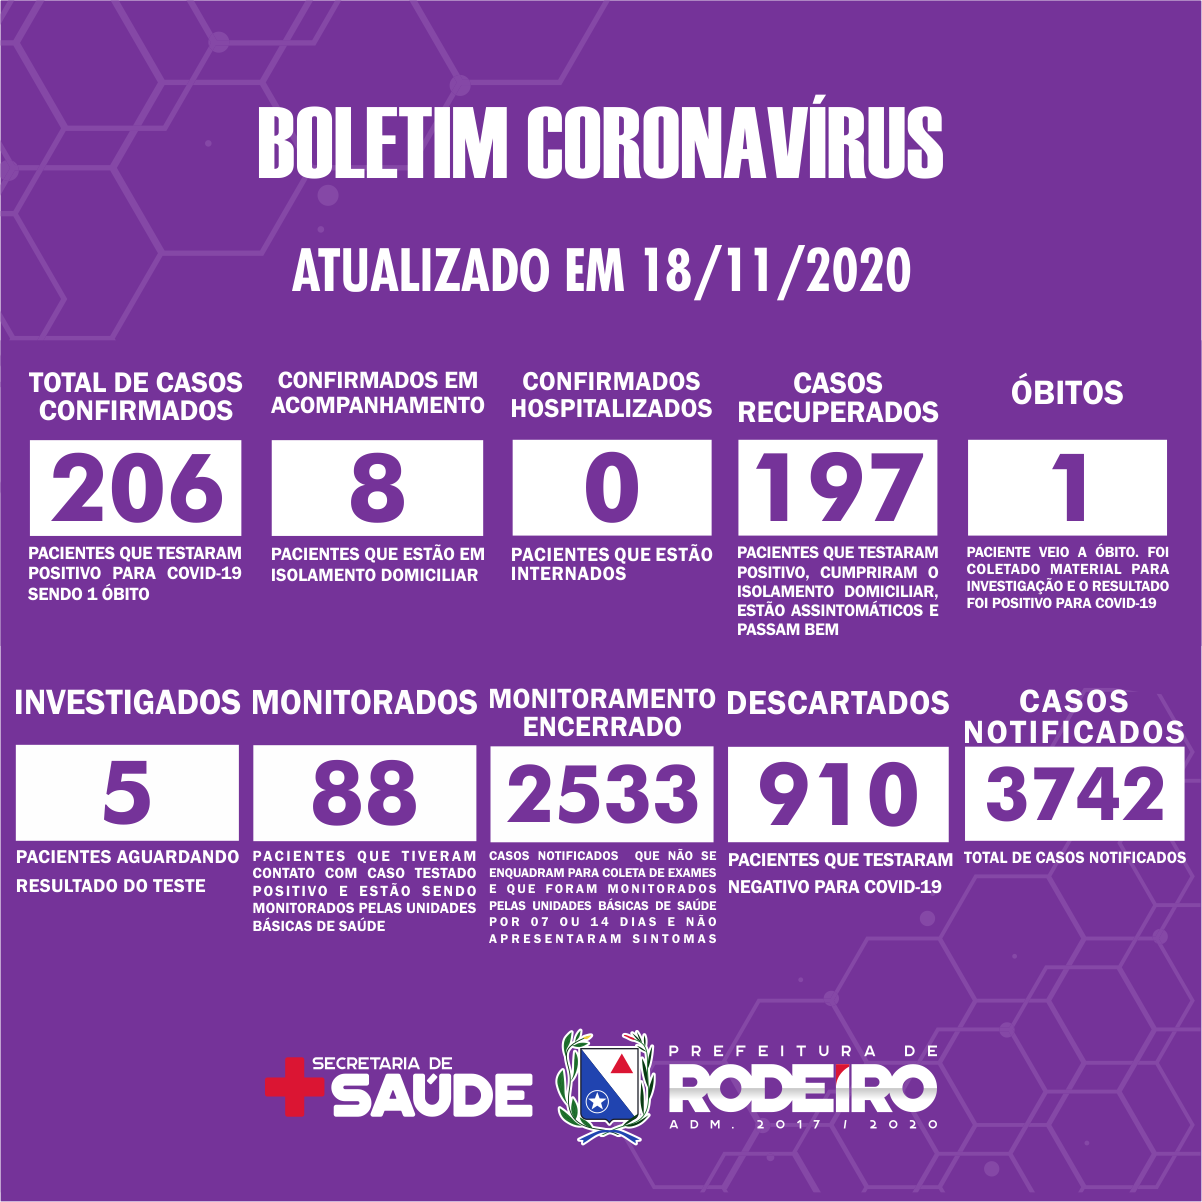 Boletim Epidemiológico do Município de Rodeiro sobre coronavírus, atualizado em 18/11/2020